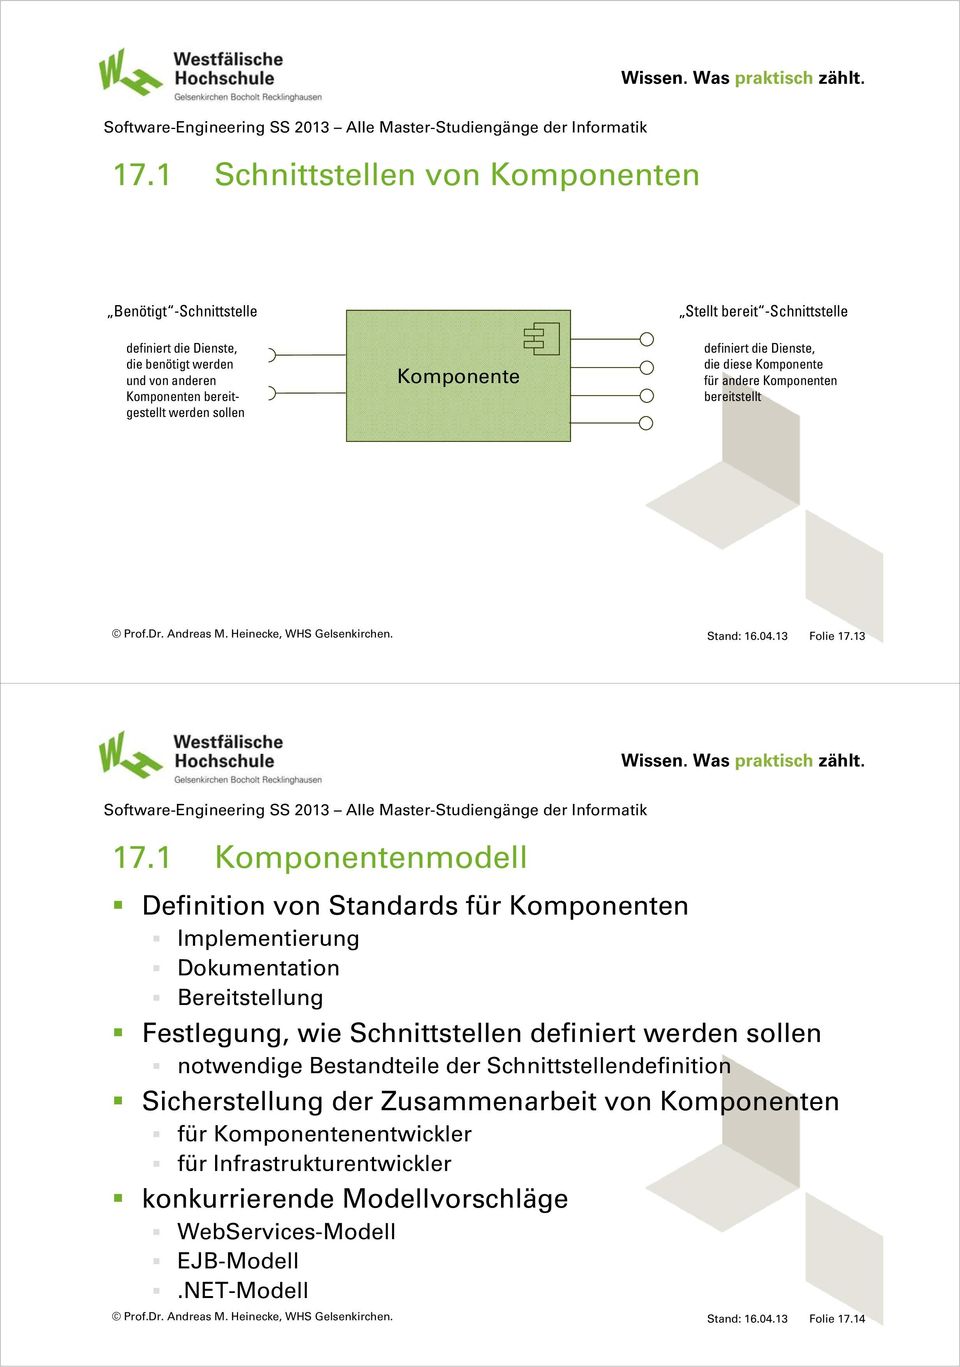 1 Komponentenmodell Definition von Standards für Komponenten Implementierung Dokumentation Bereitstellung Festlegung, wie Schnittstellen definiert werden sollen notwendige